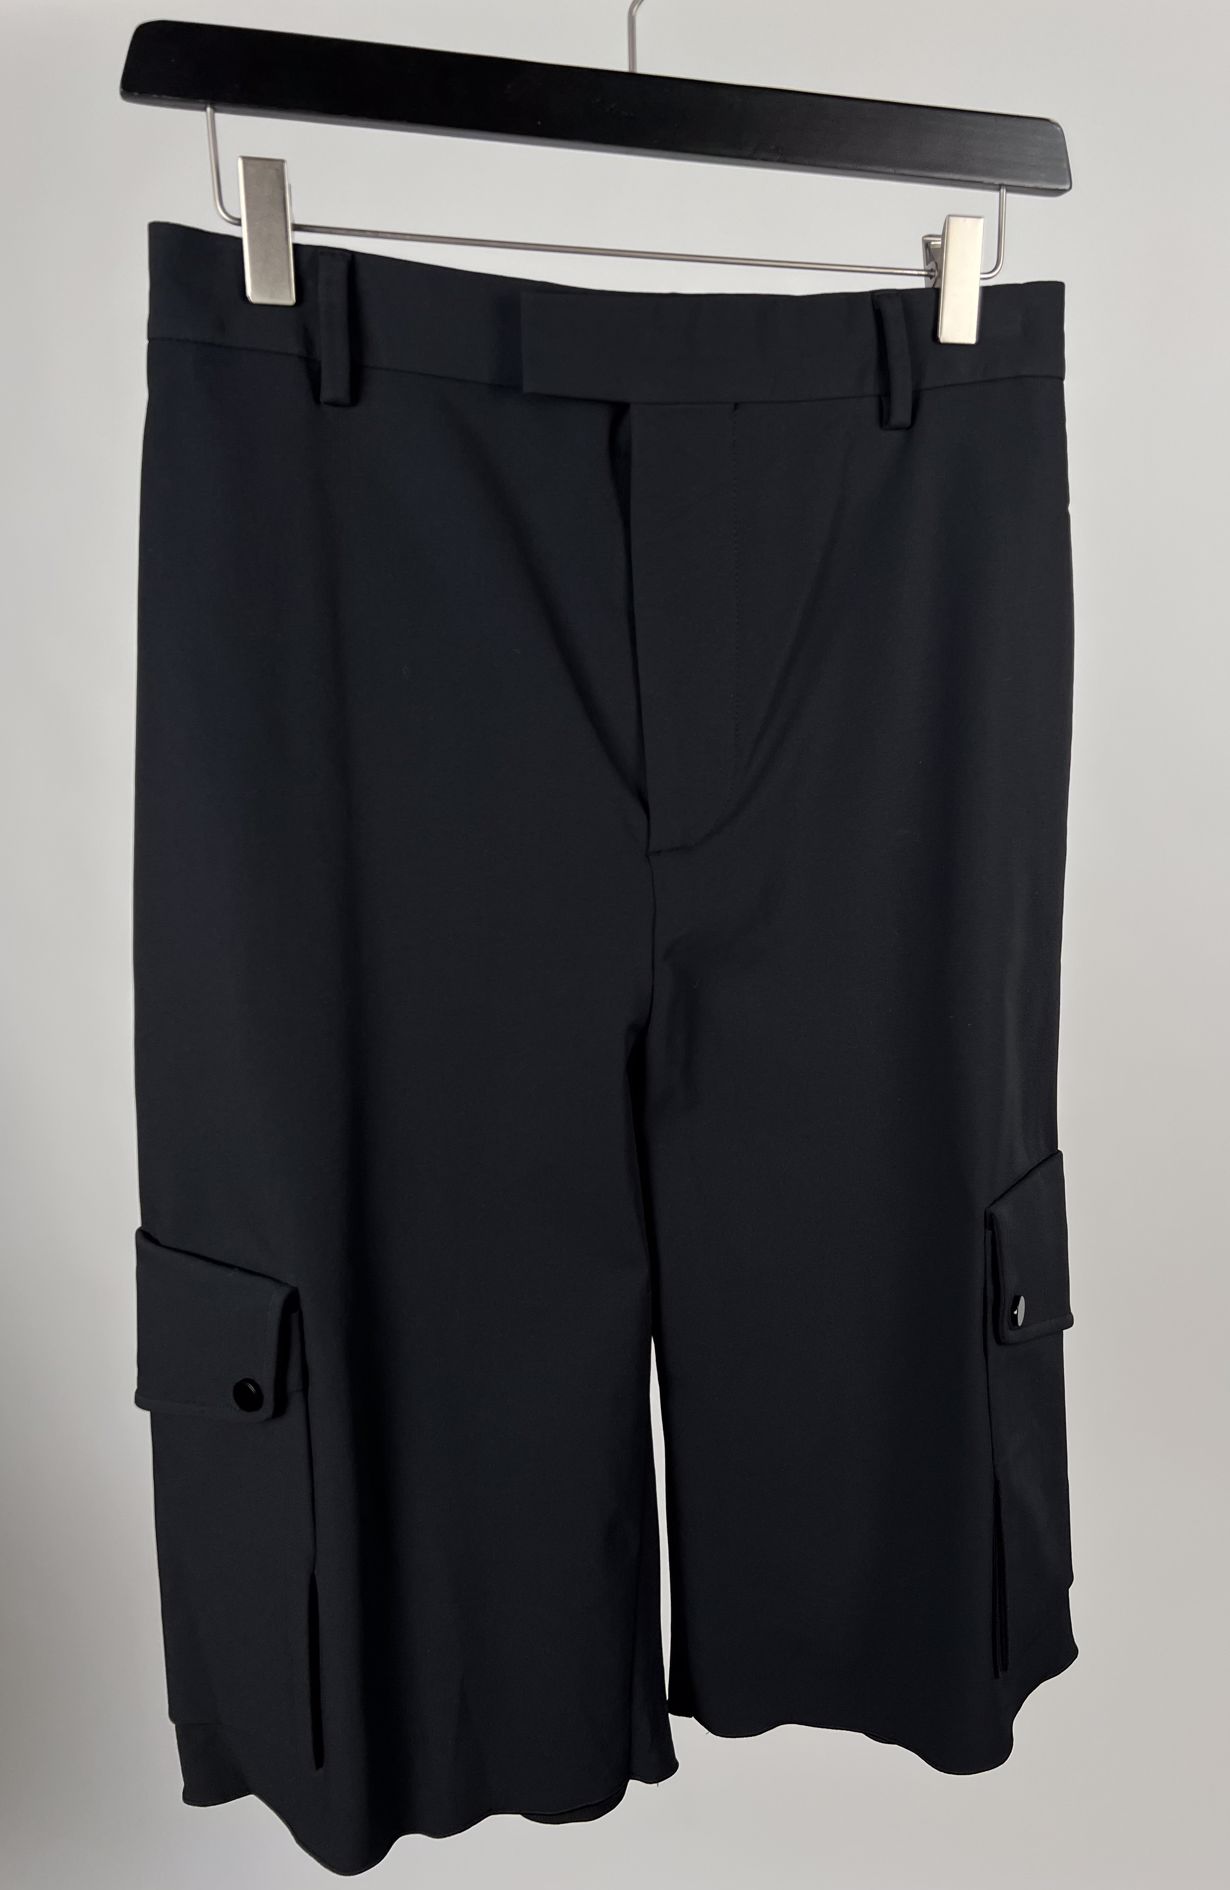 Bottega Veneta shorts black size IT38 (36)